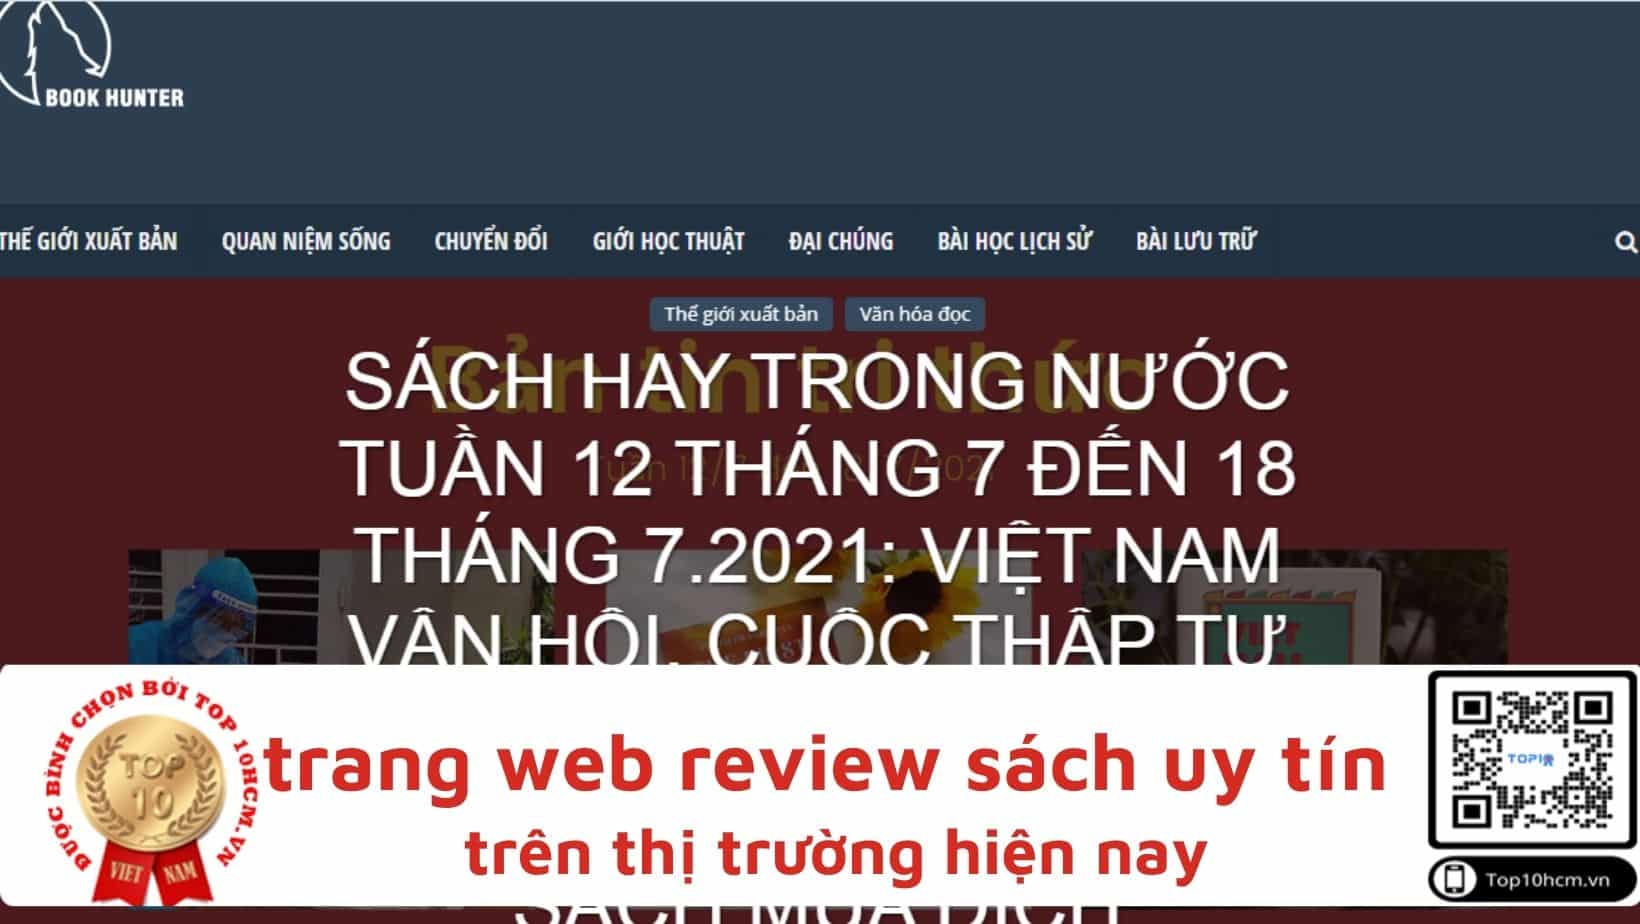 bookhunterclub min Top 9 trang web review sách uy tín nhất tại Việt Nam trong năm 2021 - sachvui.vn